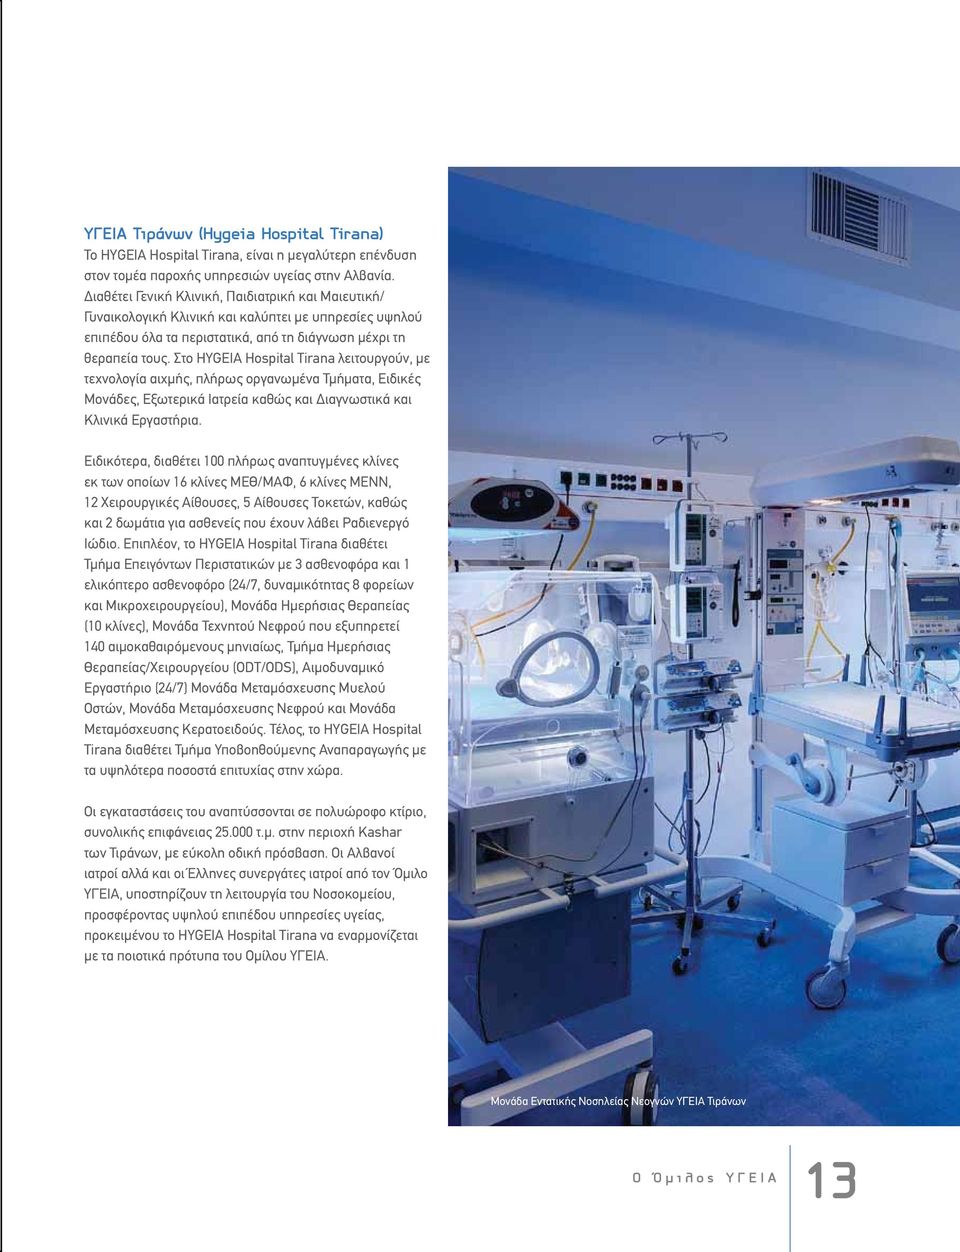 Στο HYGEIA Hospital Tirana λειτουργούν, με τεχνολογία αιχμής, πλήρως οργανωμένα Τμήματα, Ειδικές Μονάδες, Εξωτερικά Ιατρεία καθώς και Διαγνωστικά και Κλινικά Εργαστήρια.